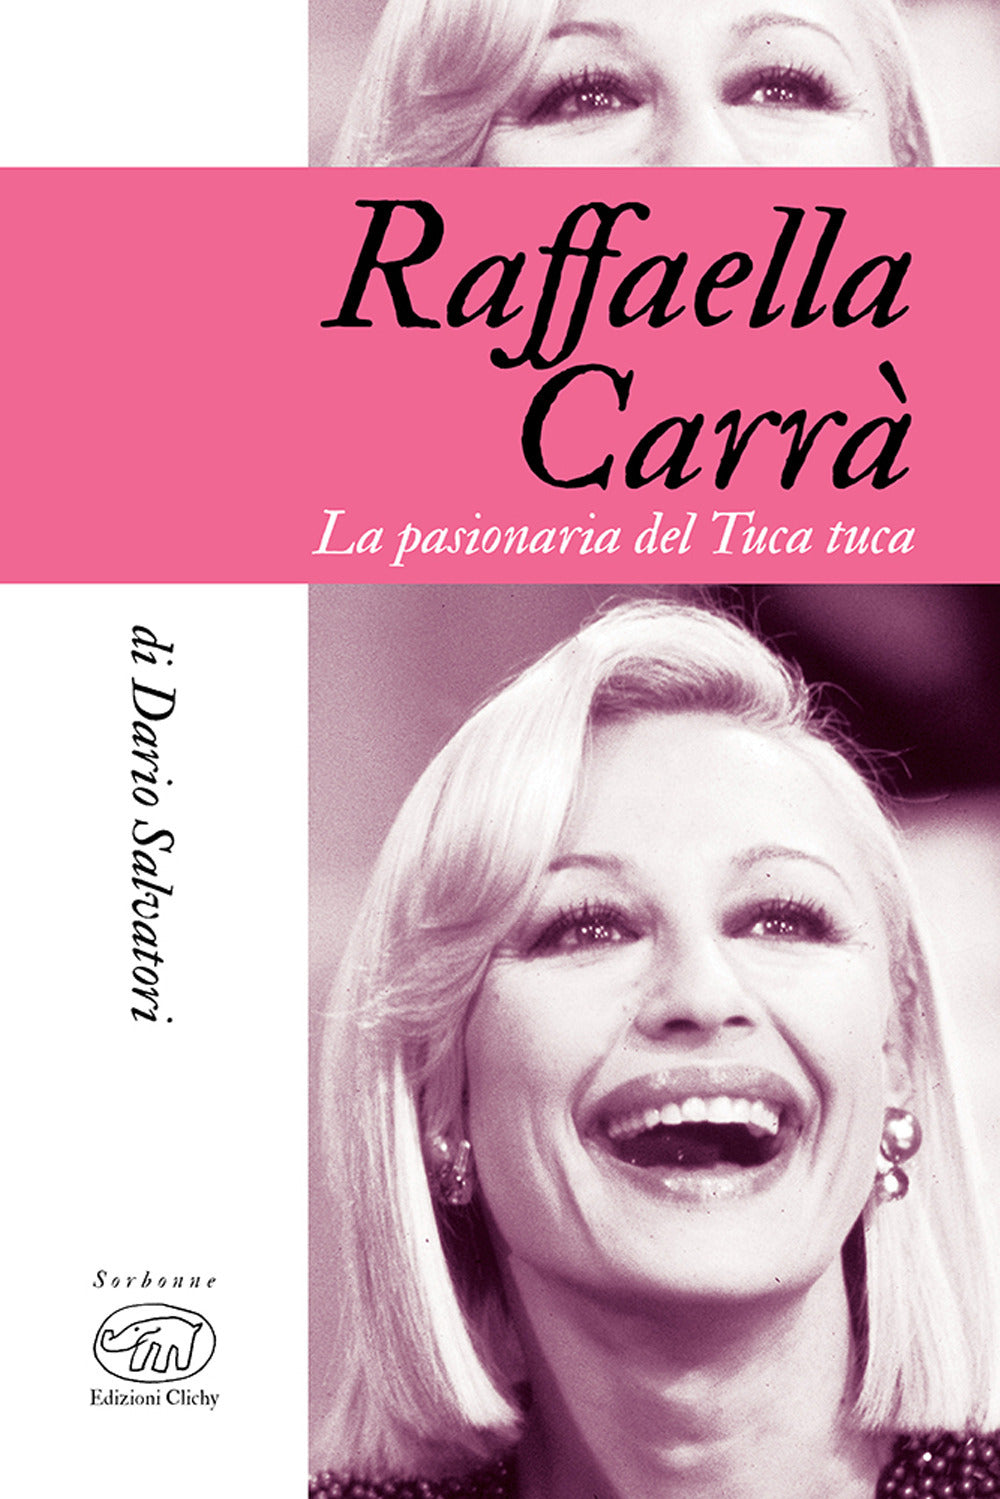 Raffaella Carrà. La pasionaria del tuca-tuca.